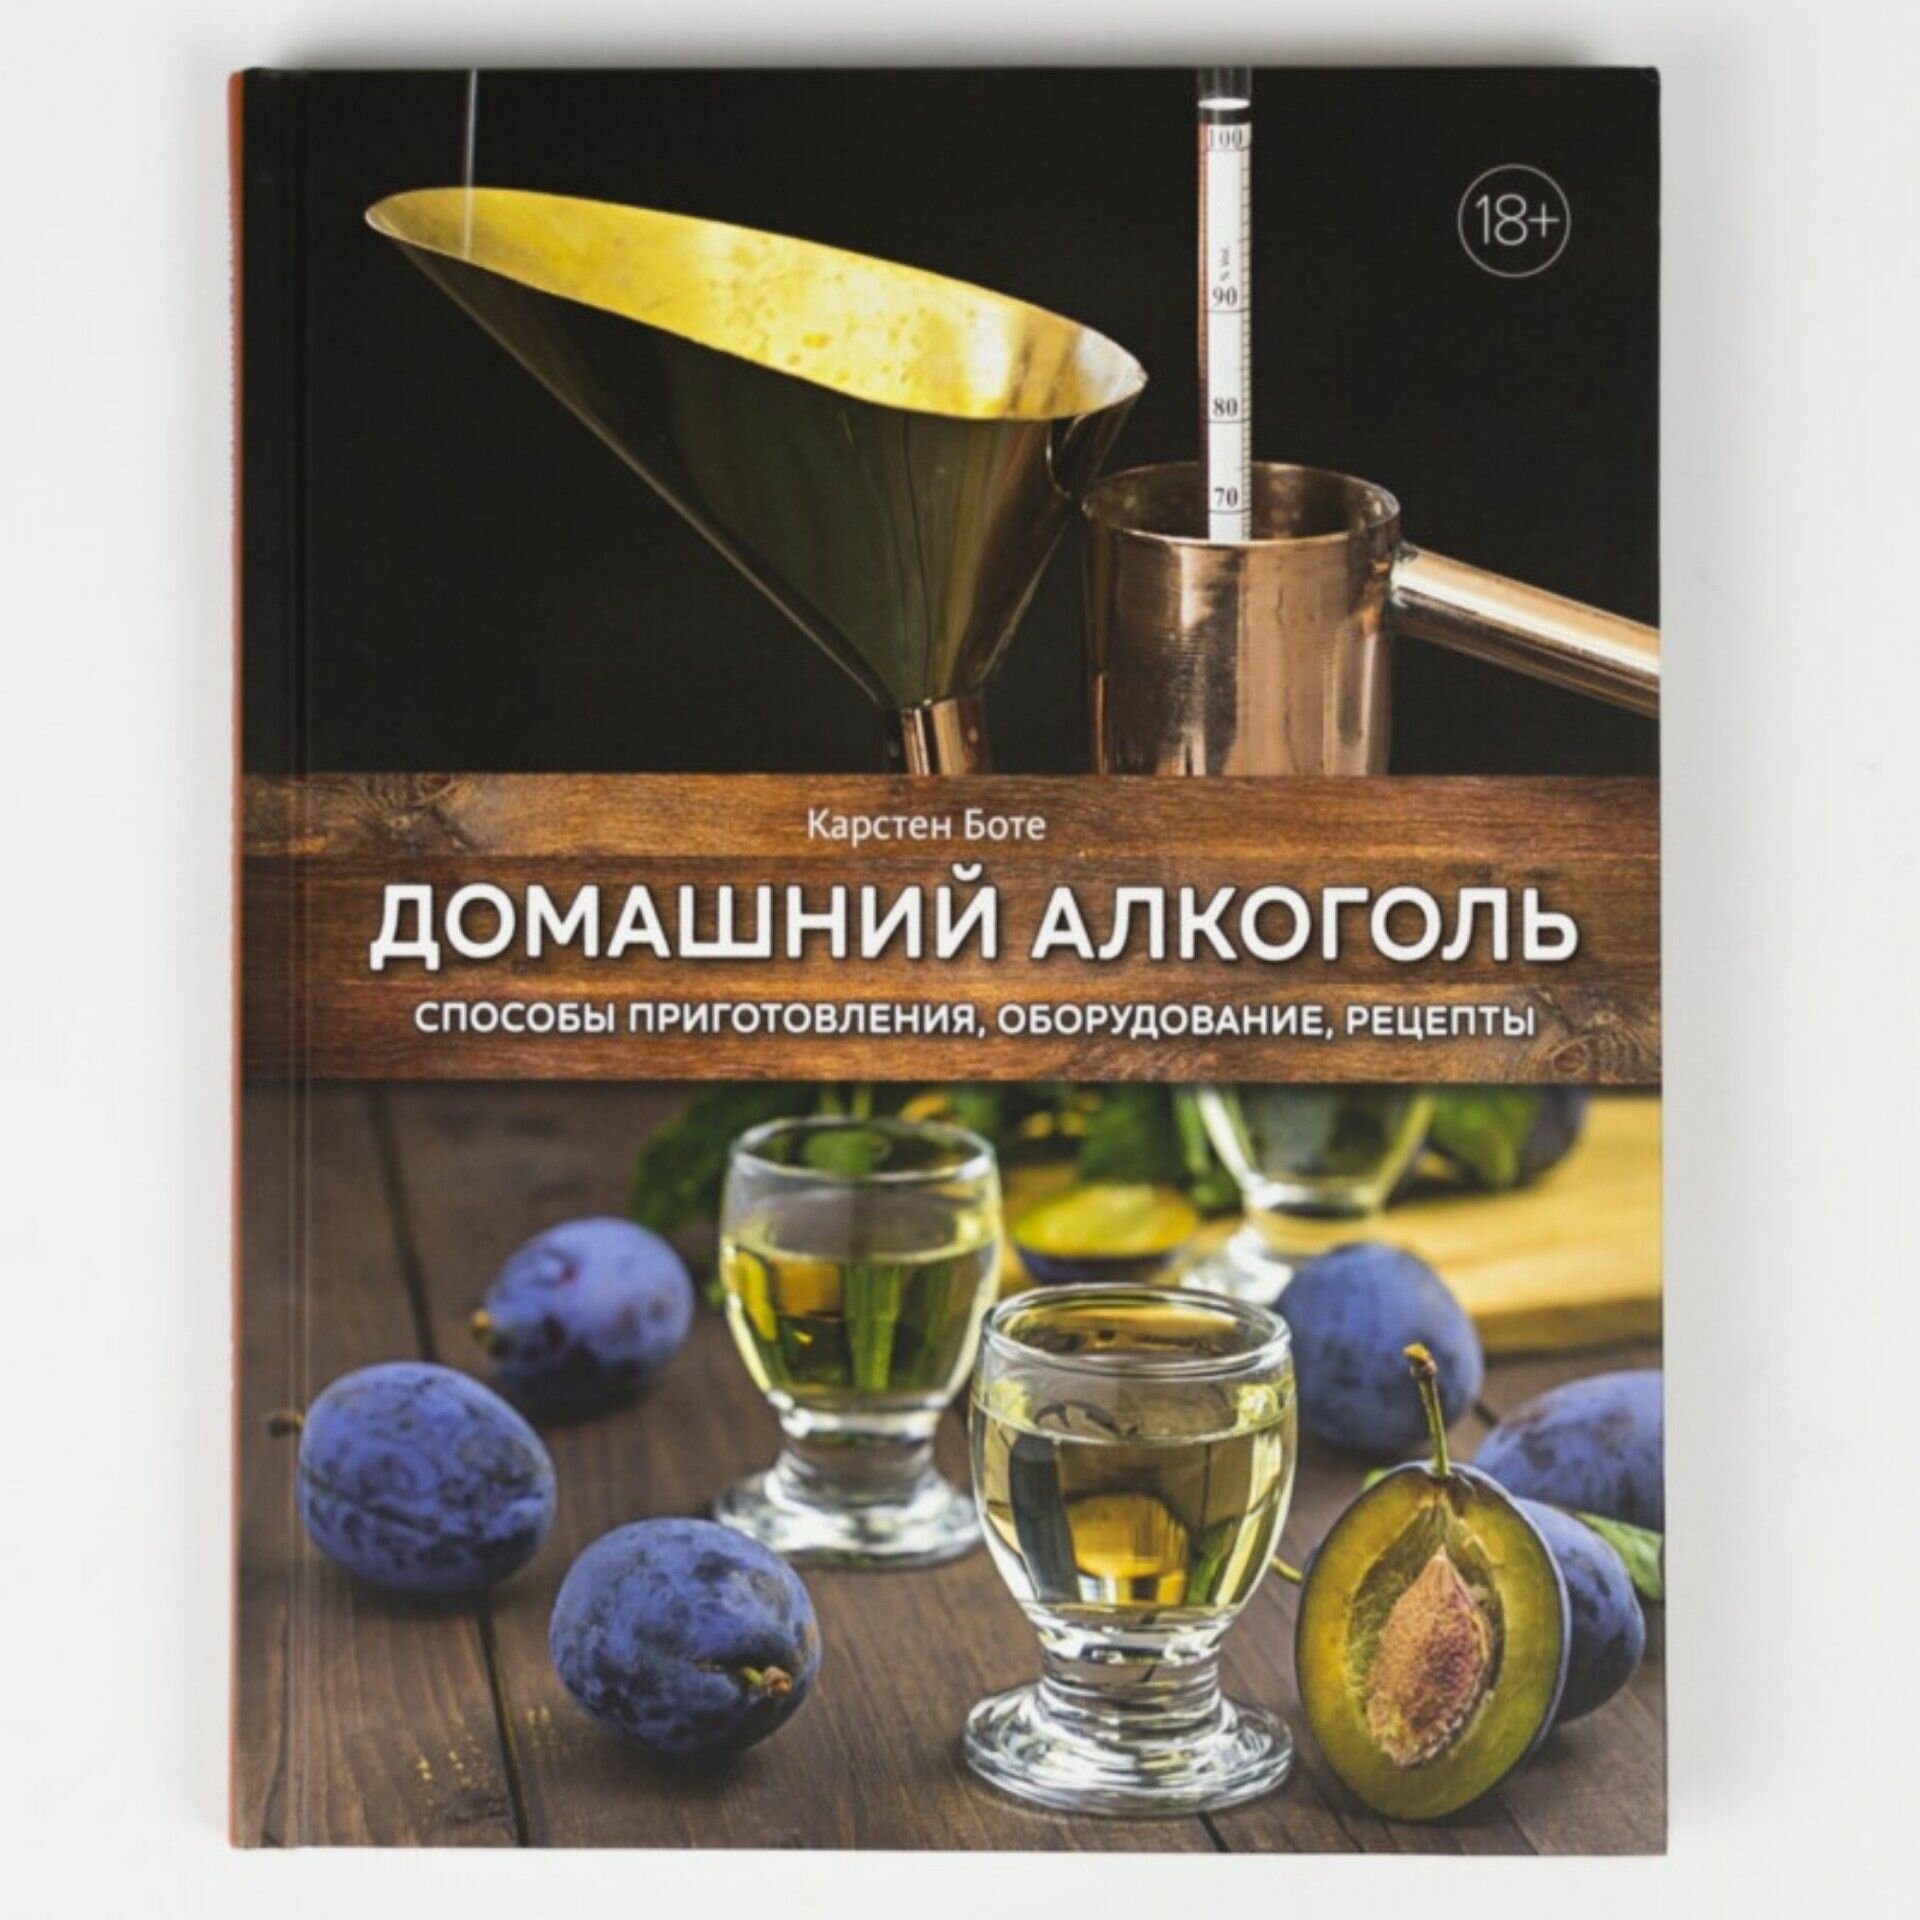 Домашний алкоголь: Способы приготовления, оборудование, рецепты - фото №11